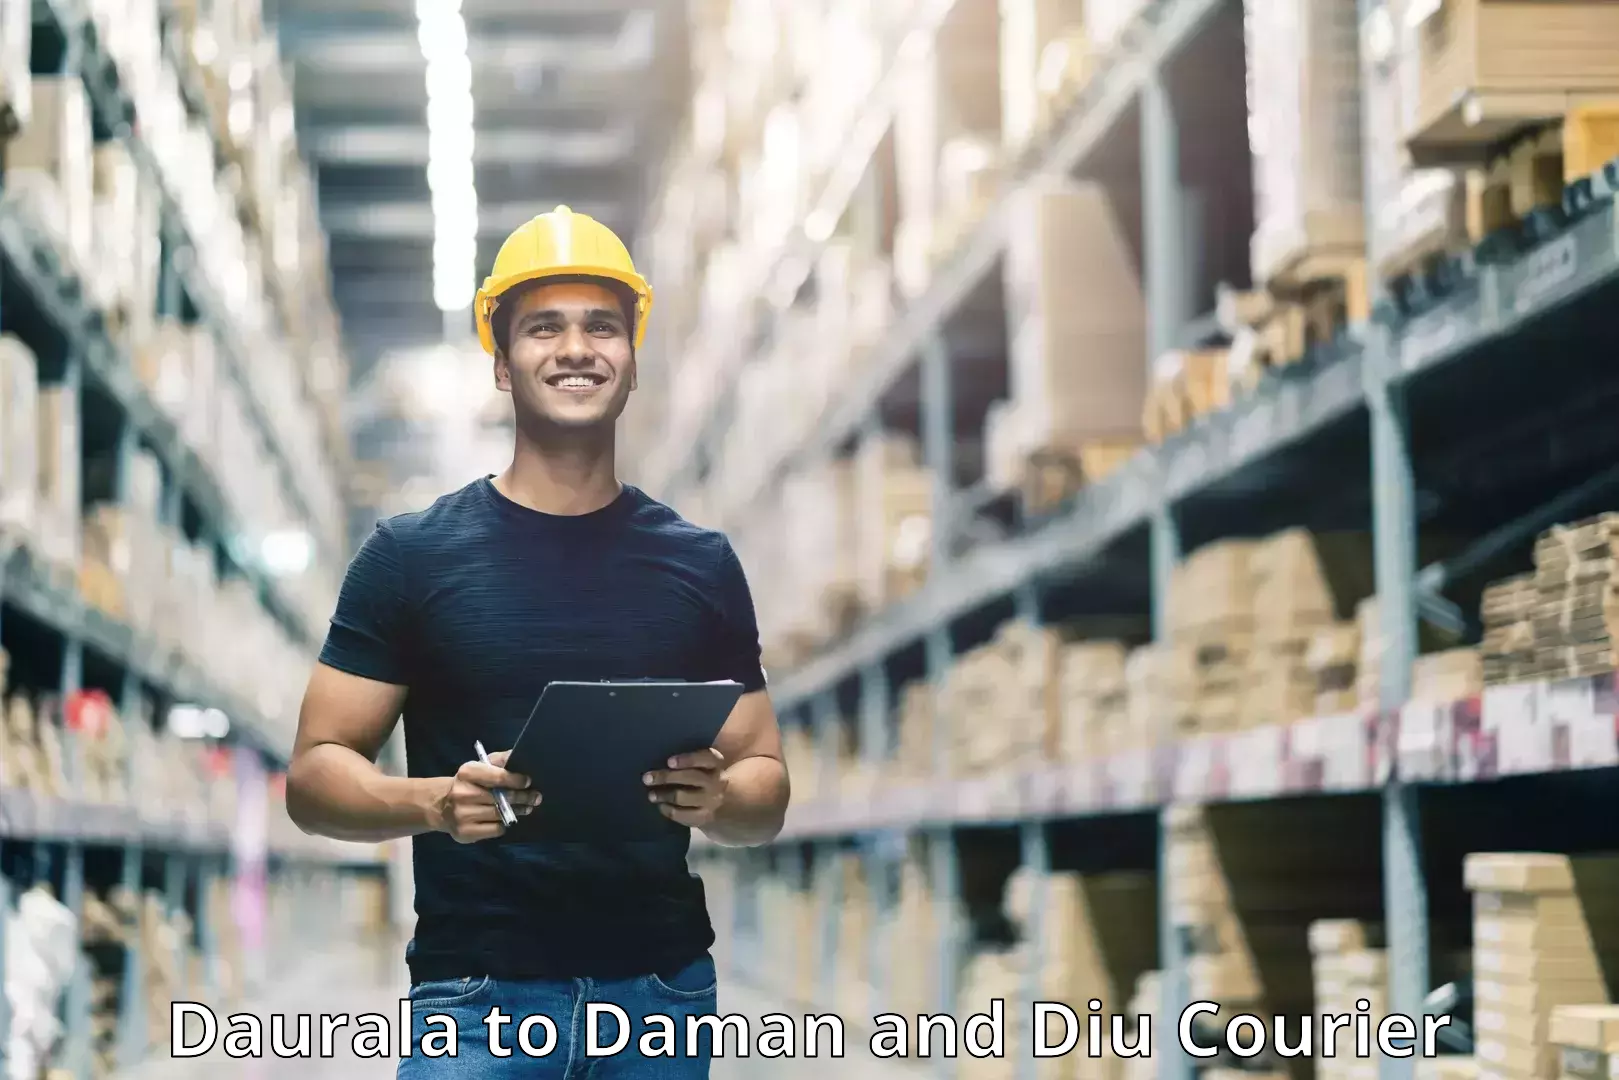 Efficient parcel service Daurala to Daman and Diu